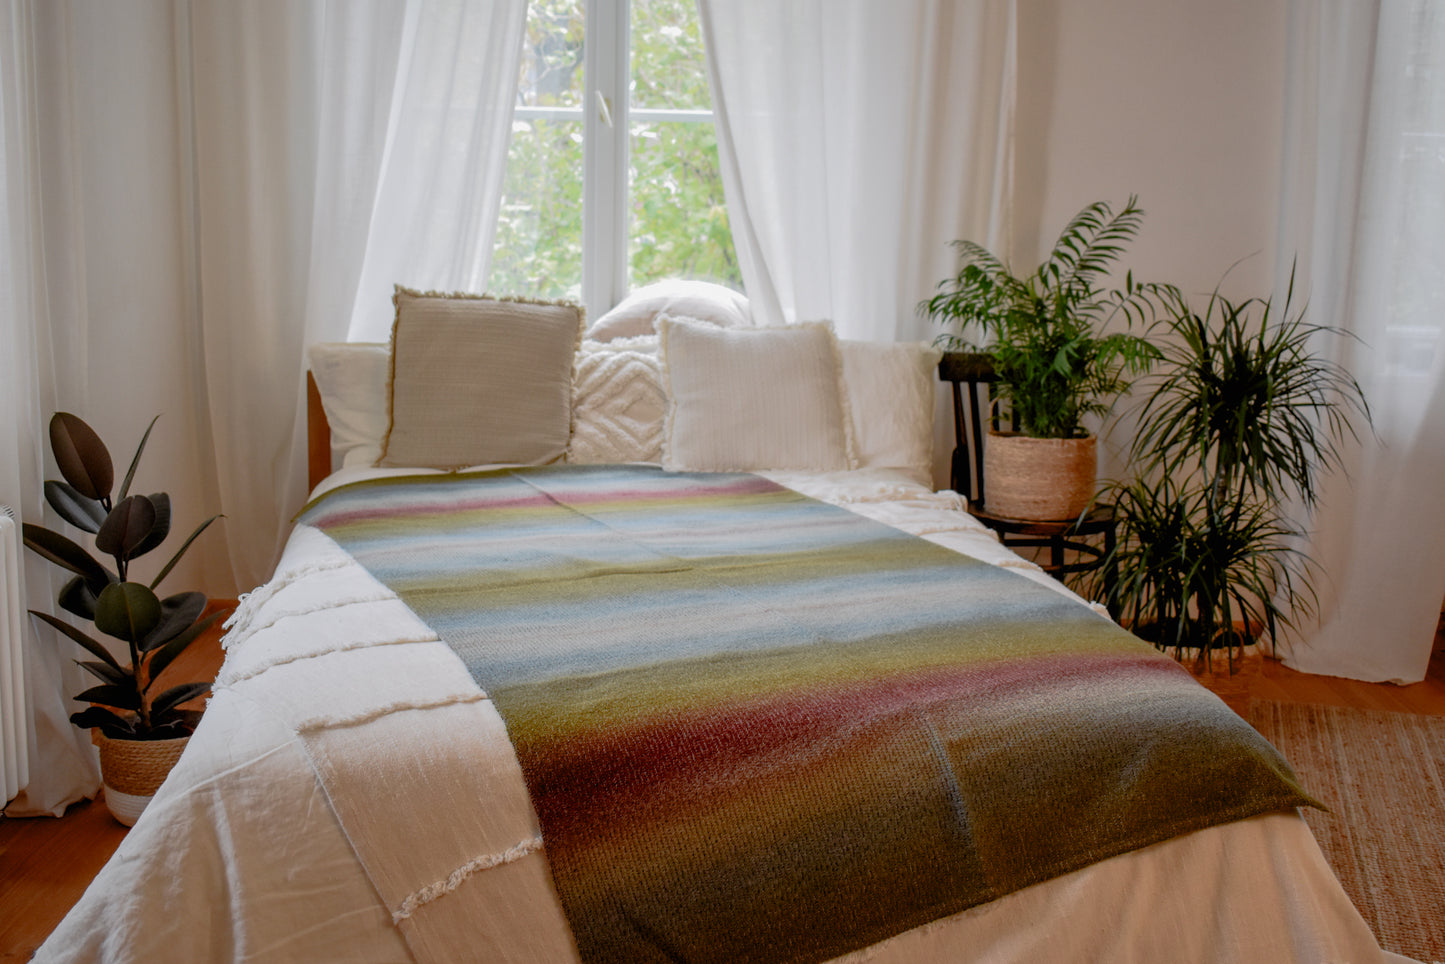 Hand-woven wool blanket / plaid in mist tones (BATE 6)